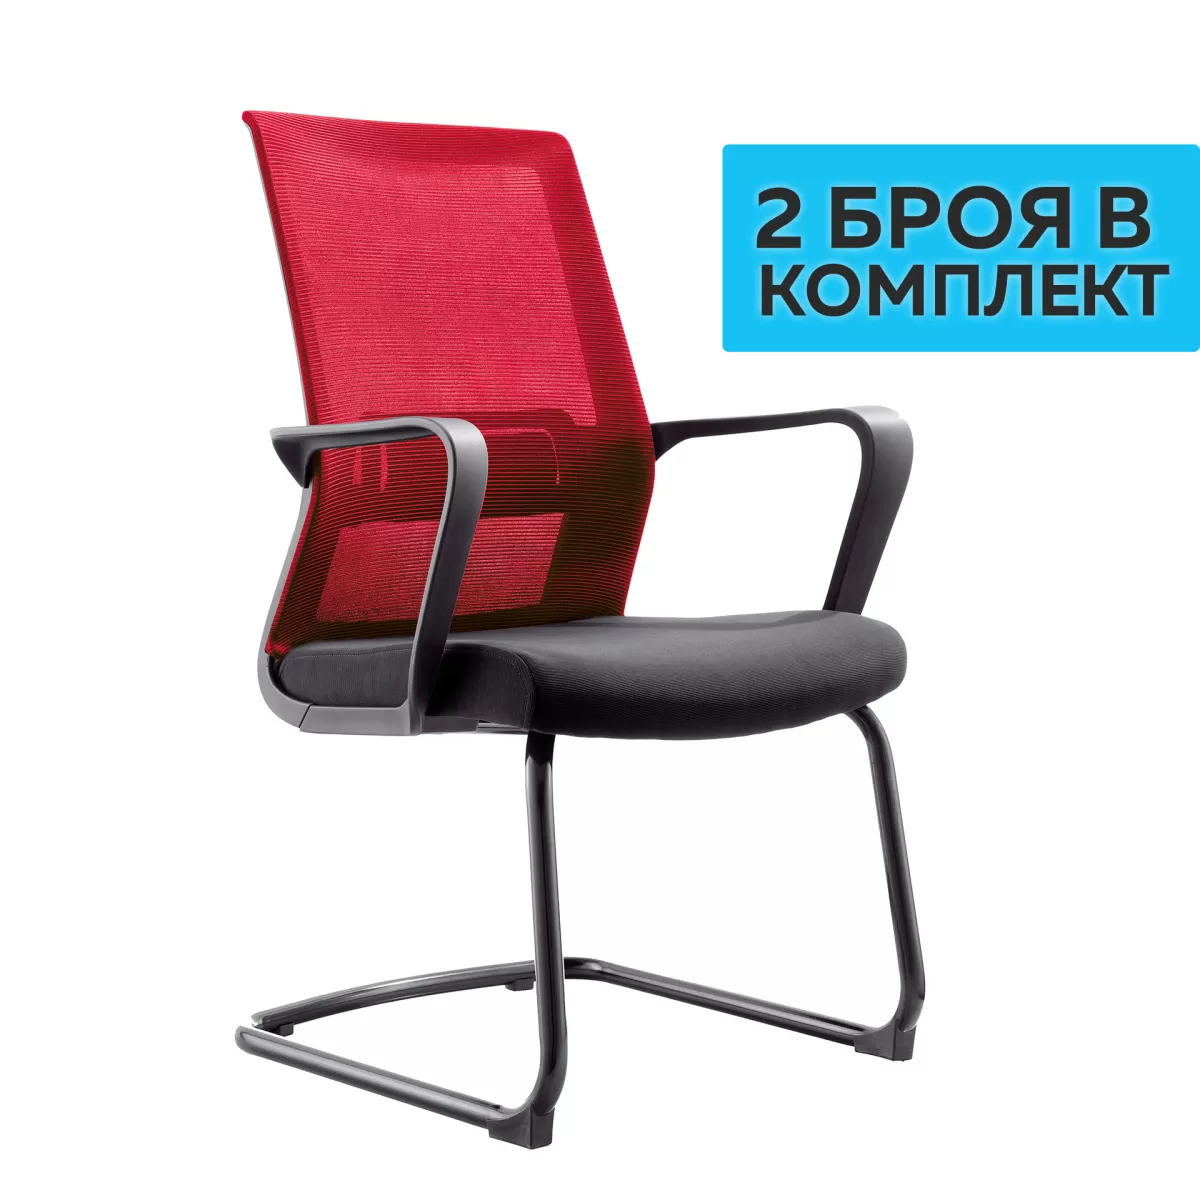 RFG Посетителски стол Smart M, дамаска и меш, черна седалка, червена облегалка, 2 броя в комплкет